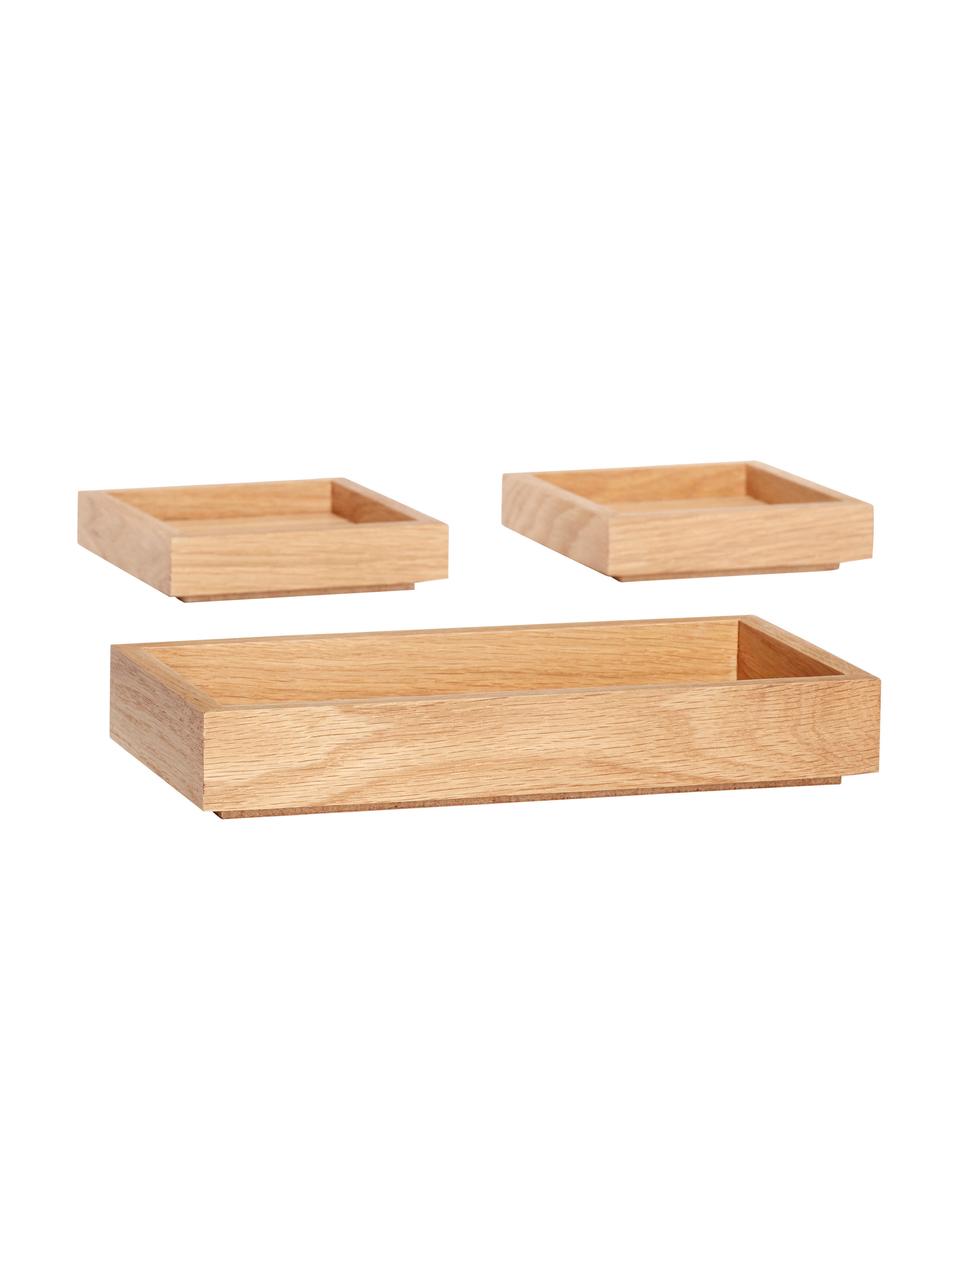 Set de cajas apilables Klara, 3 uds., Chapa de roble, madera de roble con certificado FSC, Madera, Set de diferentes tamaños